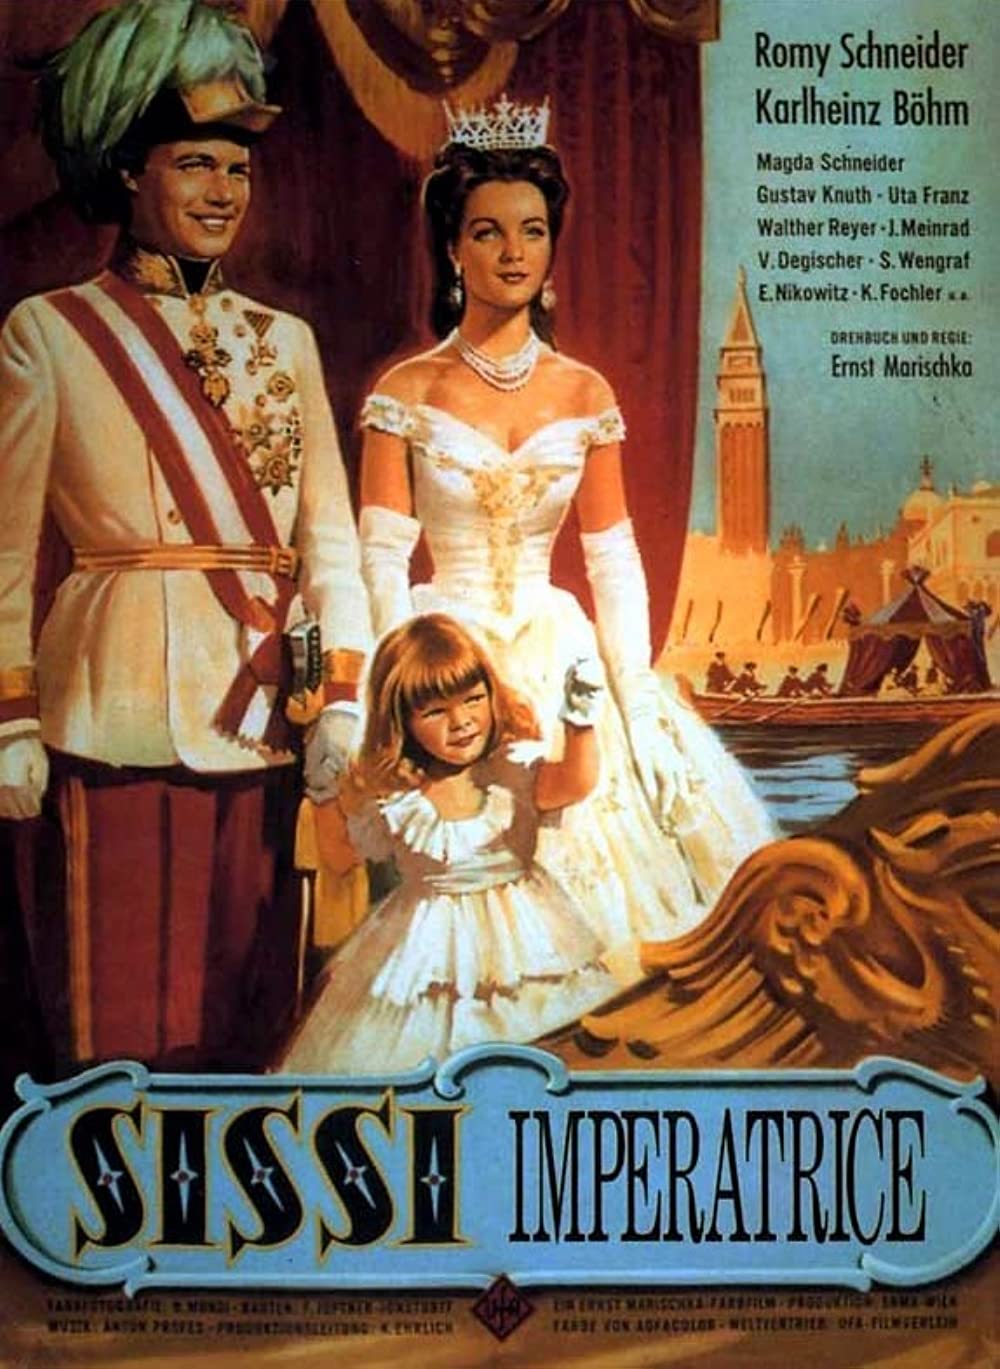 Filmbeschreibung zu Sissi, die junge Kaiserin